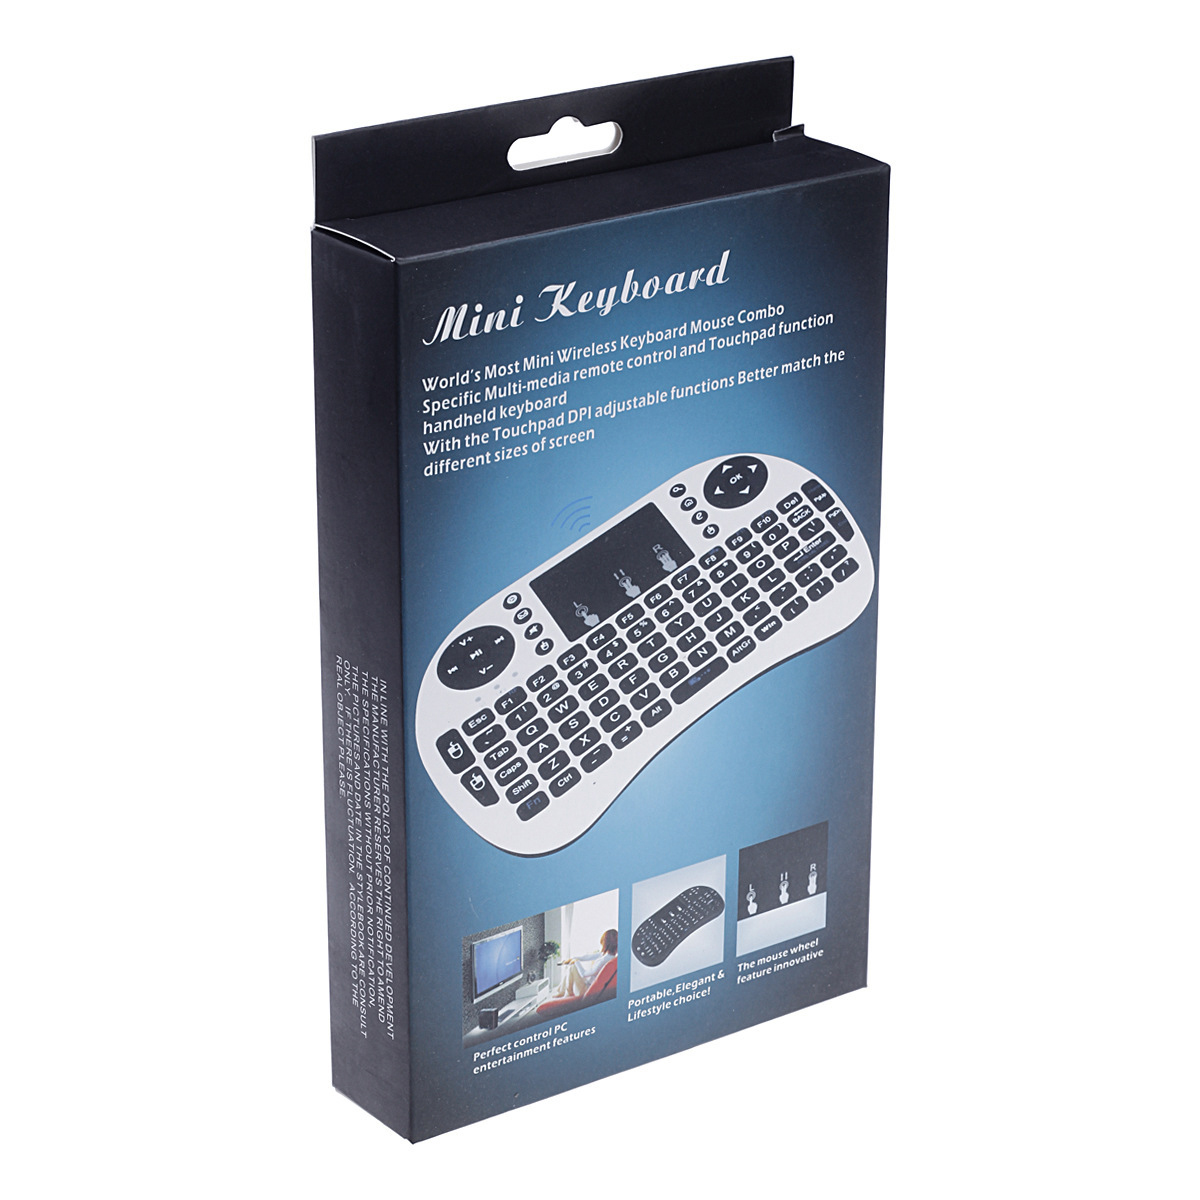 Mini tastiera Air Mouse remota retroilluminata Rii i8 con touchpad retroilluminazione Controllo wireless Android Smart TV Box MXQ M8S X96 T95 X92 HTPC PS3 Nuovo